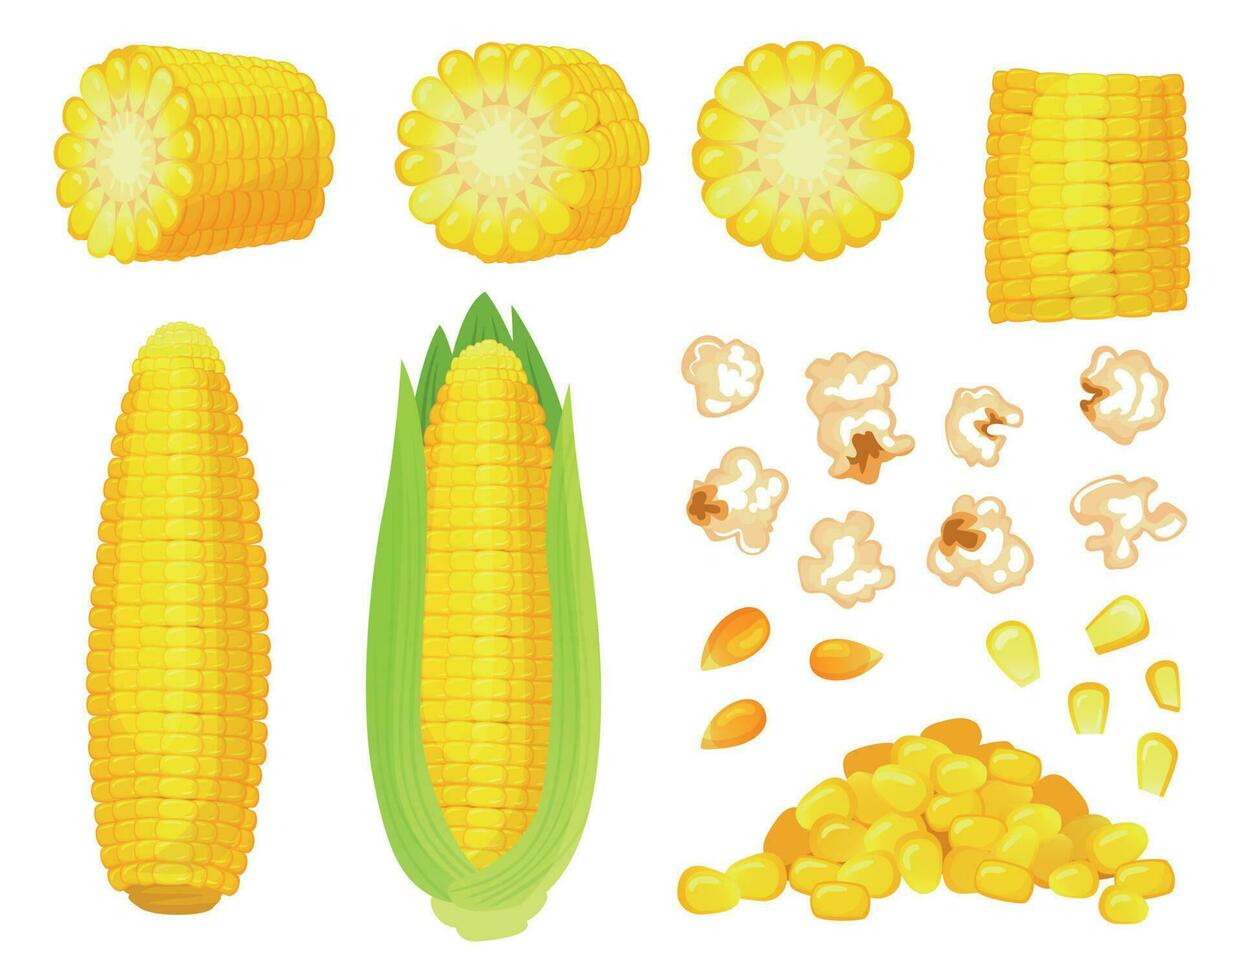 tecknad serie majs. gyllene majs skörda, popcorn corny korn och ljuv majs. öra av majs, utsökt grönsaker vektor illustration uppsättning